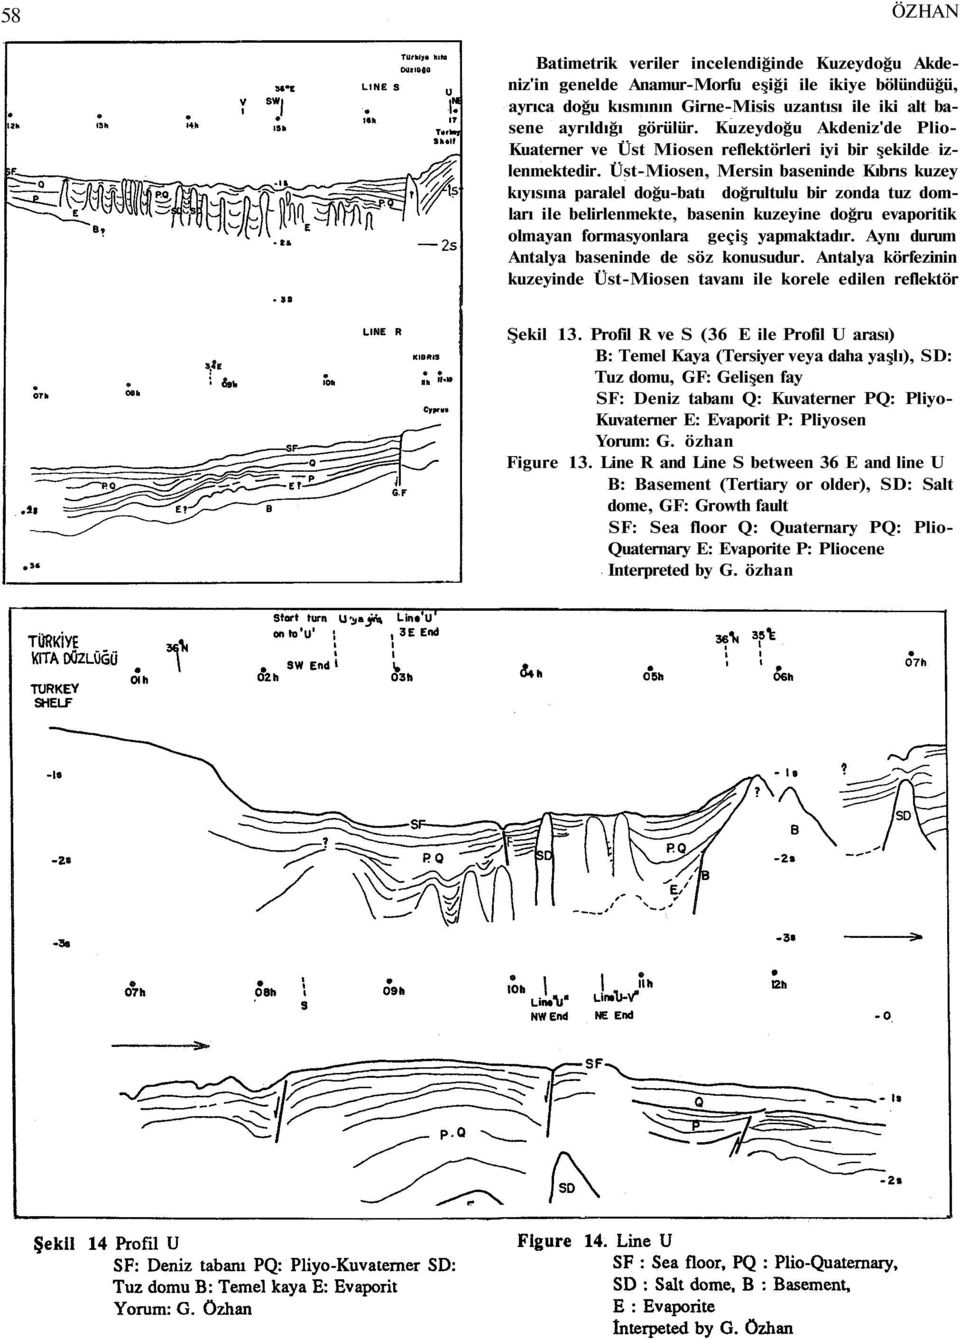 Üst-Miosen, Mersin baseninde Kıbrıs kuzey kıyısına paralel doğu-batı doğrultulu bir zonda tuz domları ile belirlenmekte, basenin kuzeyine doğru evaporitik olmayan formasyonlara geçiş yapmaktadır.